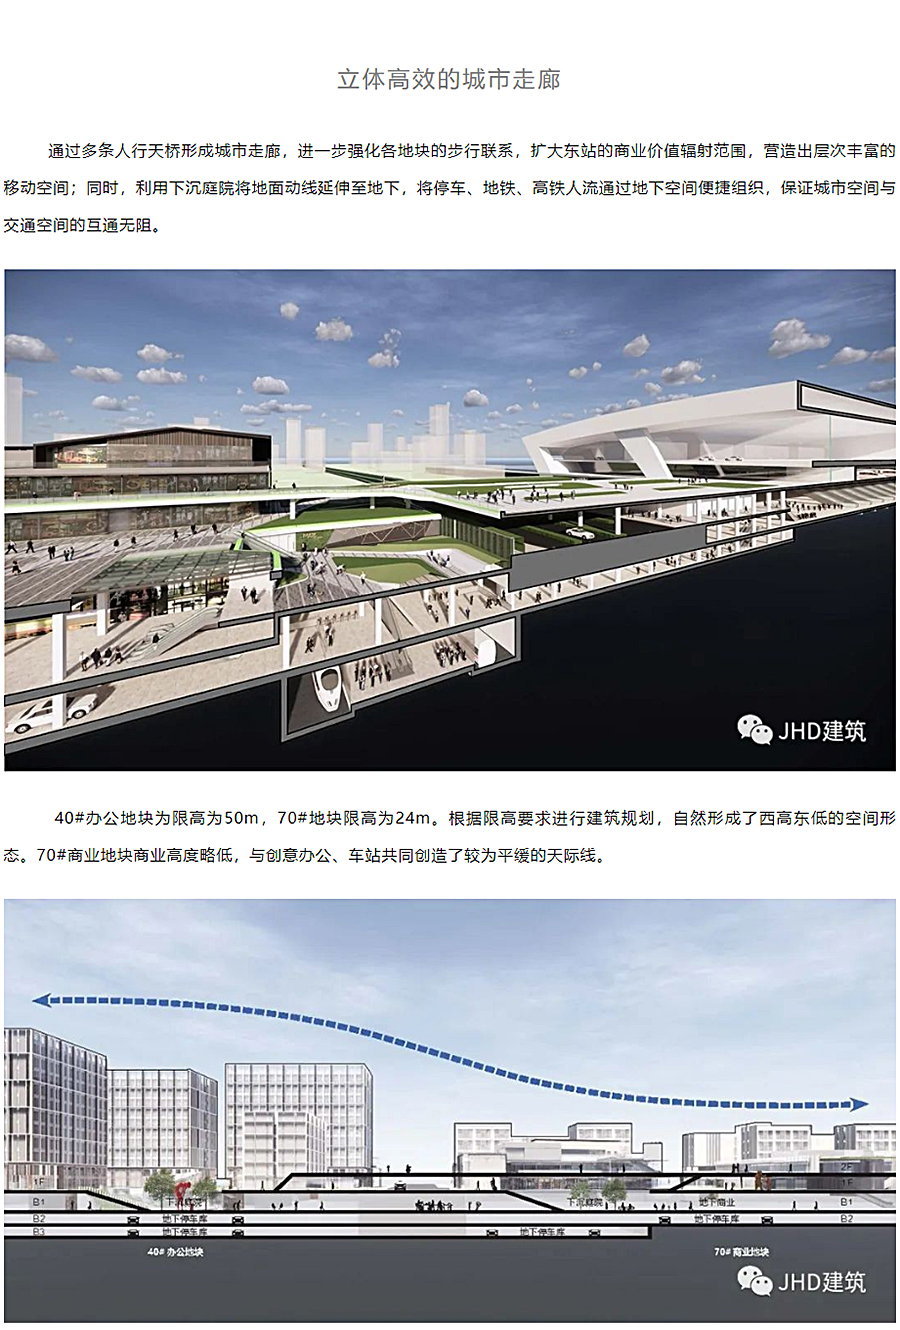 城站一体的TOD空间设计策略-_-杭州东站万象汇_0004_图层-5.jpg